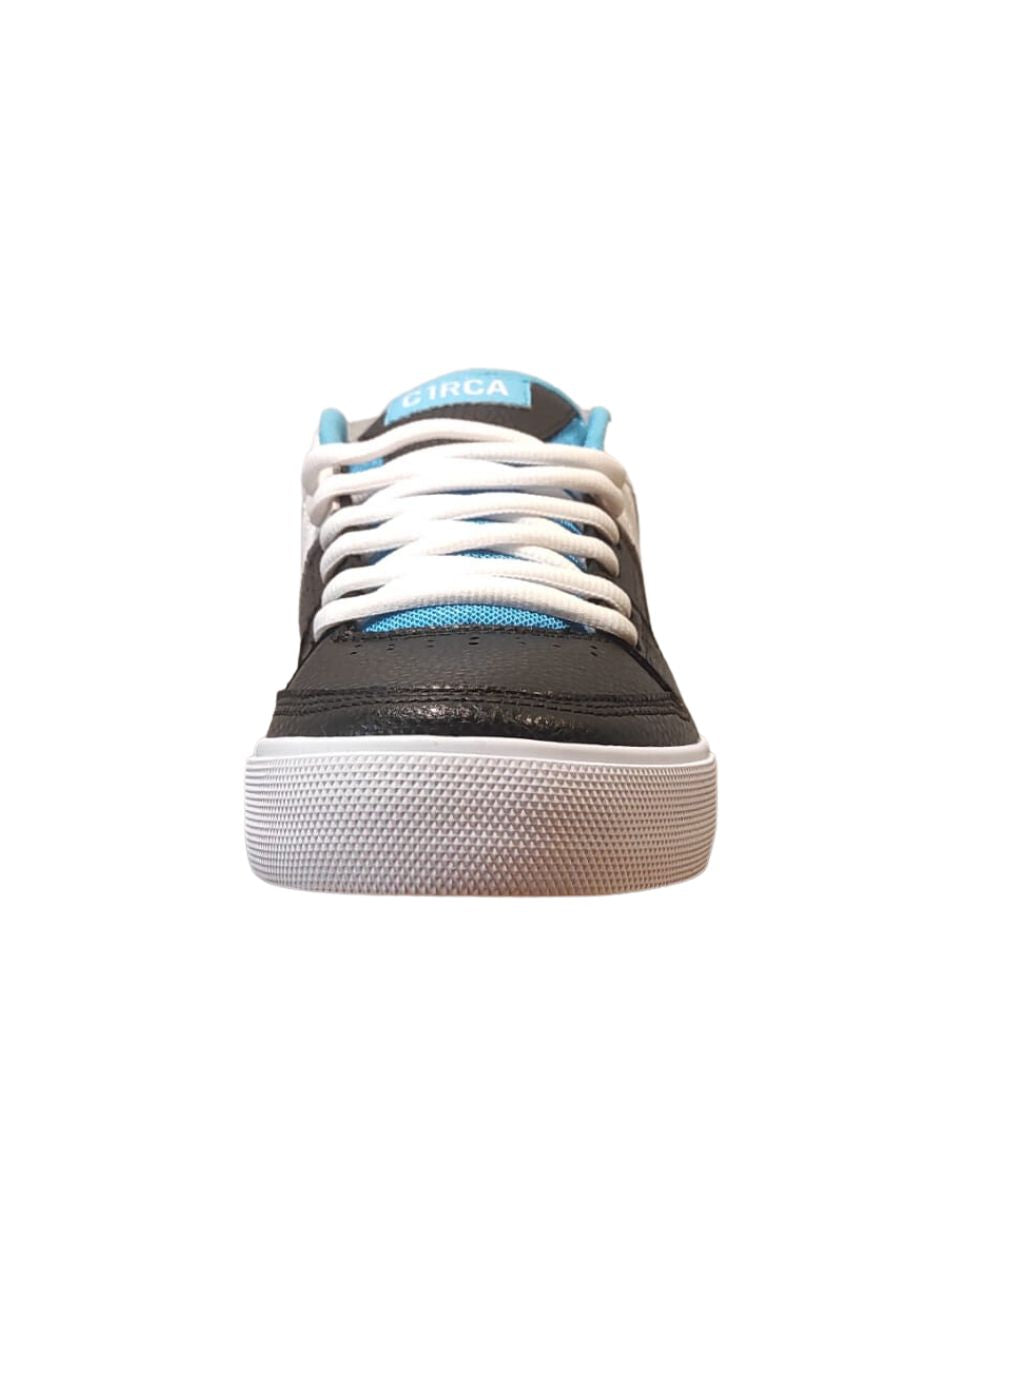 Circa Widowmaker Noir/Bachelor Button/Blanc Chaussures De Skate | Baskets | Chaussure | Collection_Zalando | Nouveaux produits | Produits les plus récents | Produits les plus vendus | surfdevils.com